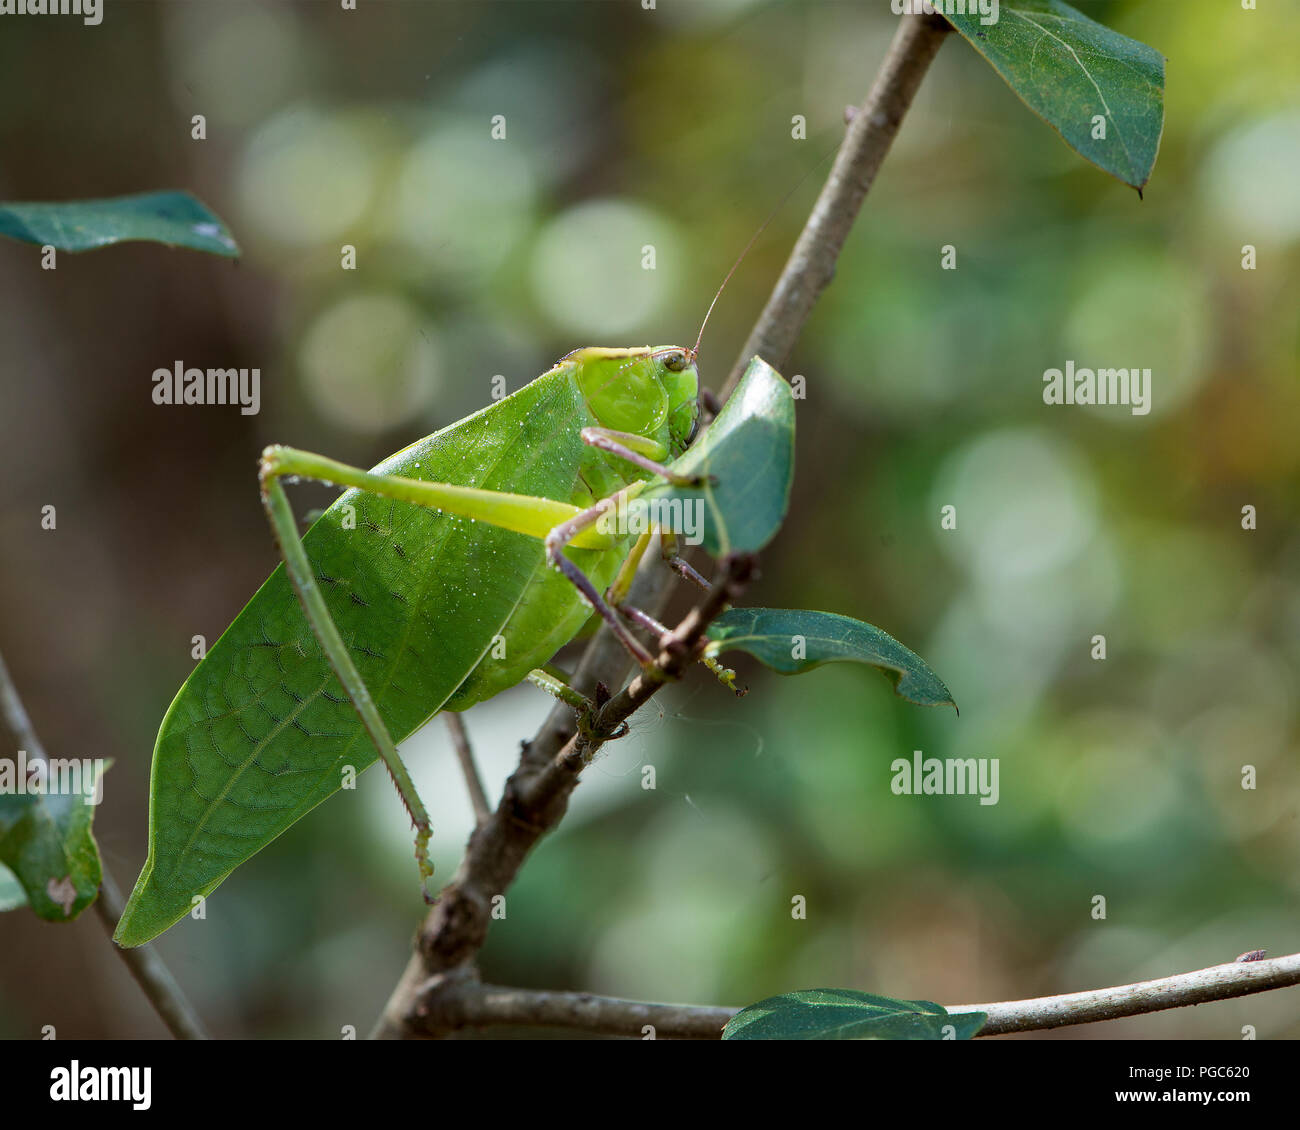 Katydid insetto su un ramo verde con un camuffamento visualizzando il suo colore verde, le antenne e gli occhi, nel suo ambiente e dintorni. Immagine. Ritratto. Foto Stock